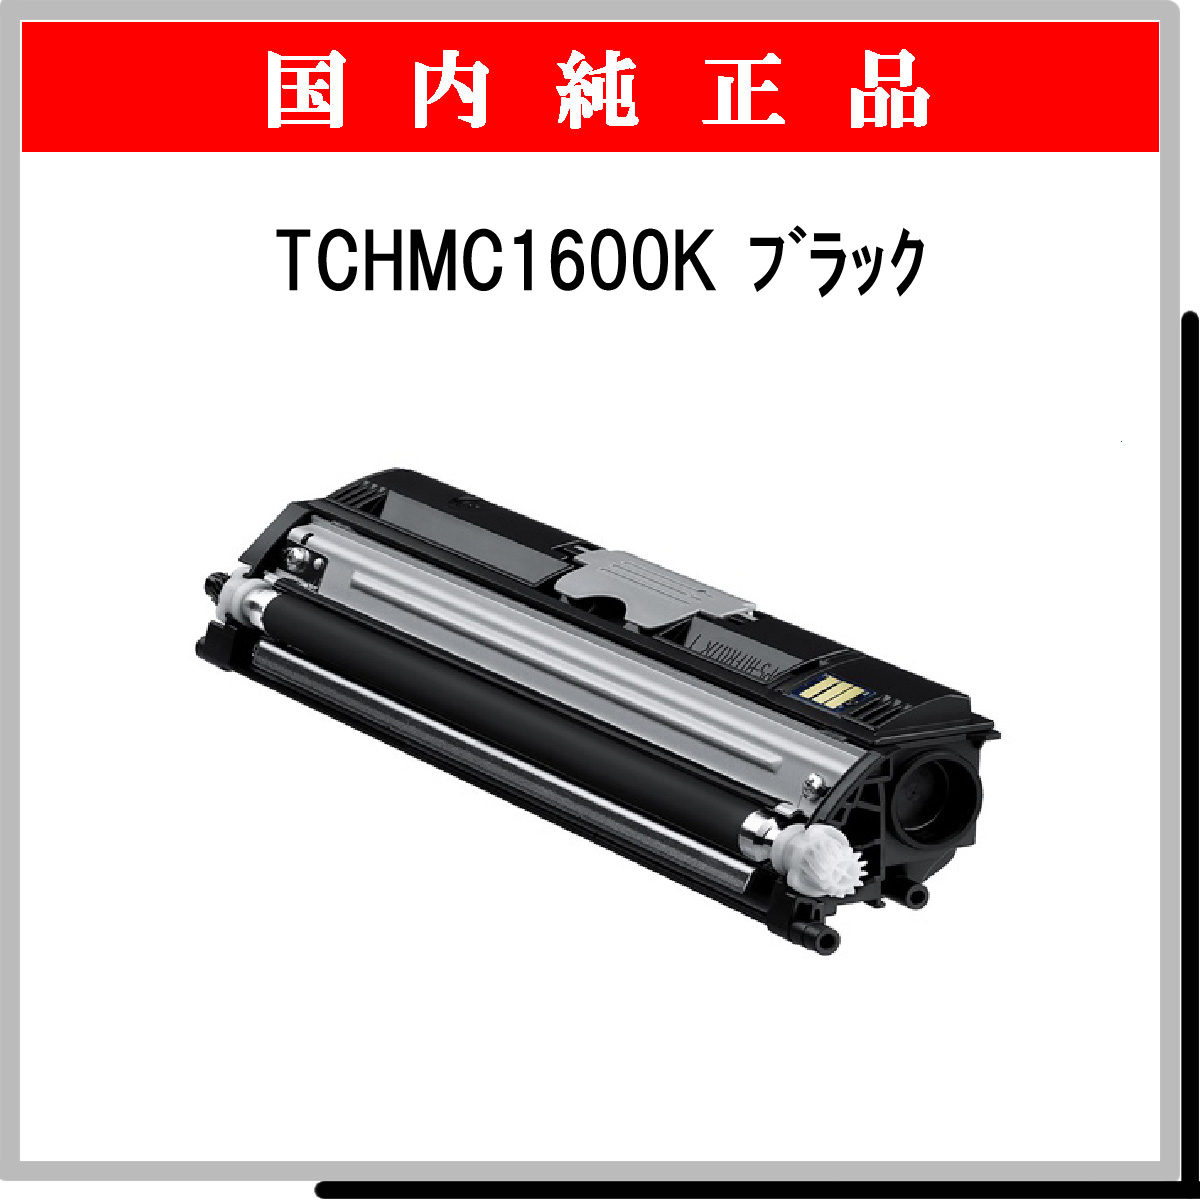 TCHMC1600K (2500枚仕様) 純正